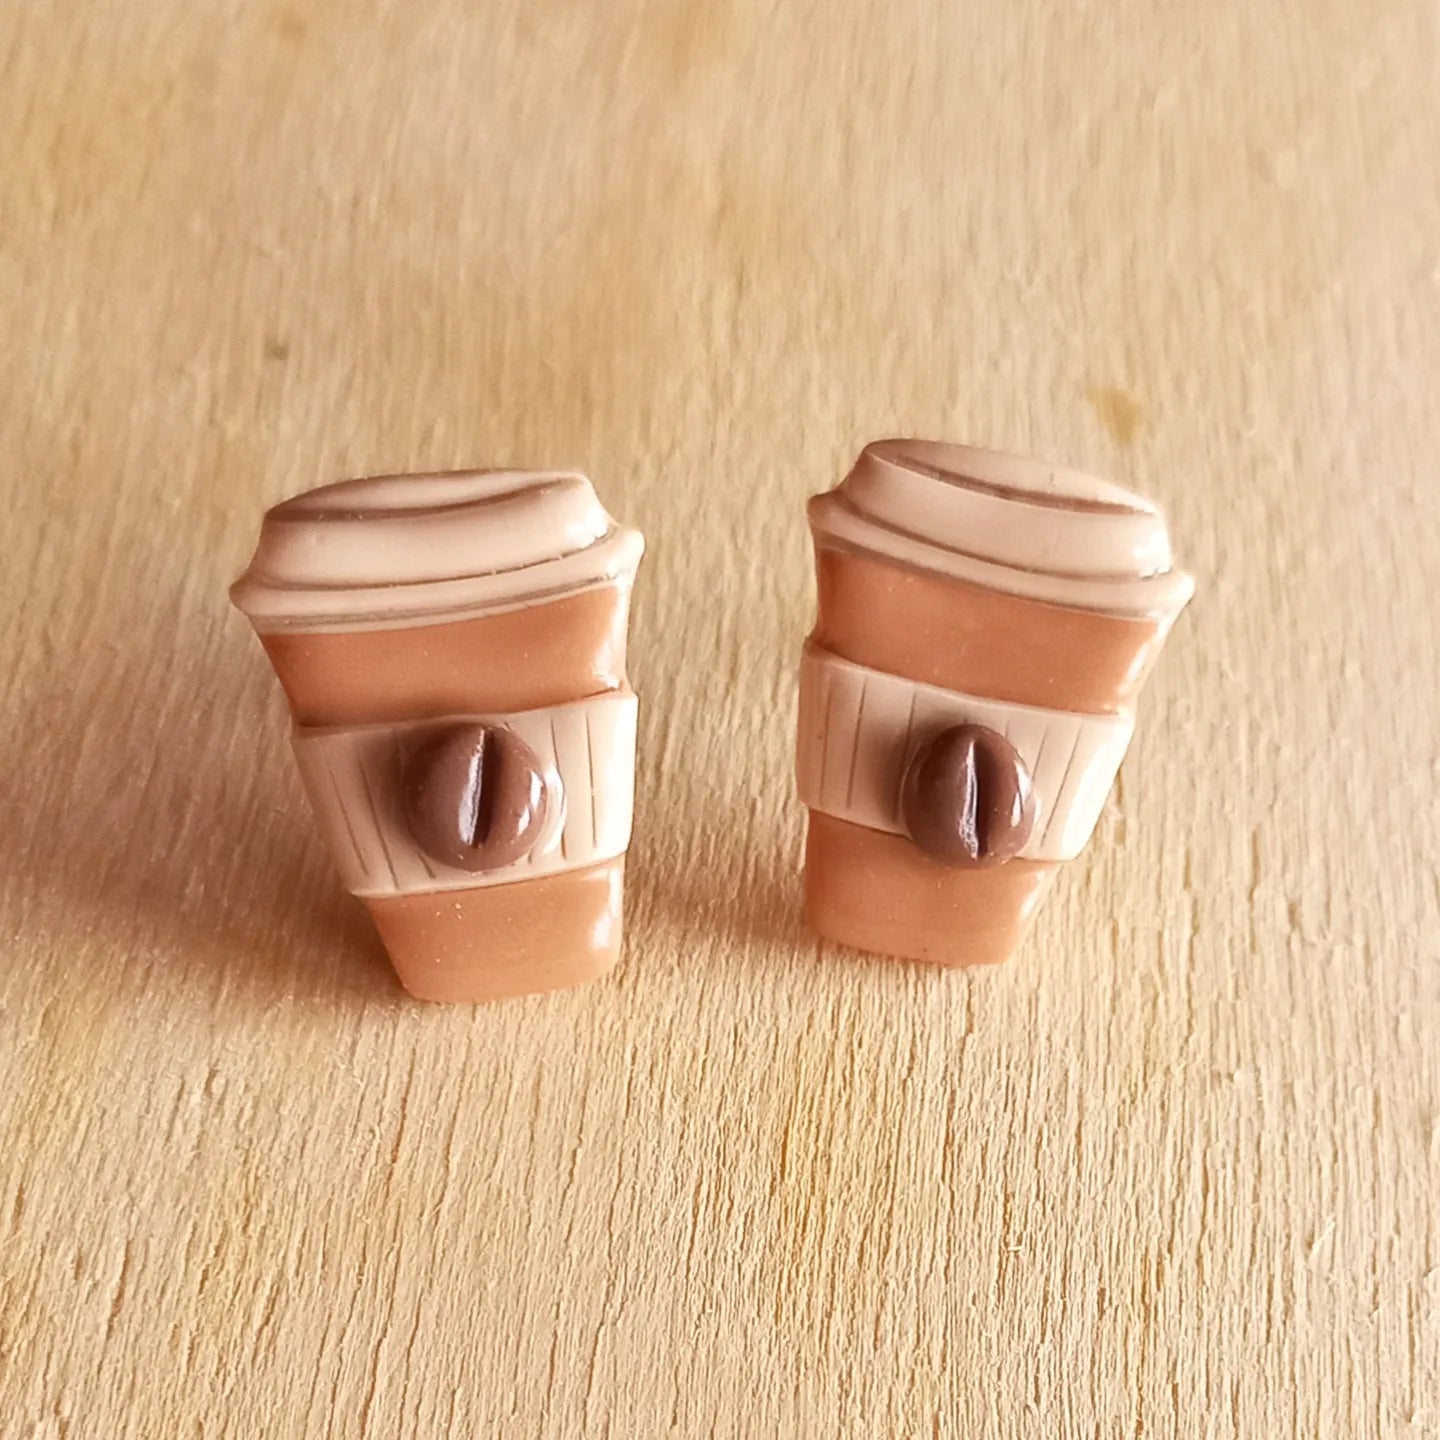 Coffee stud earrings